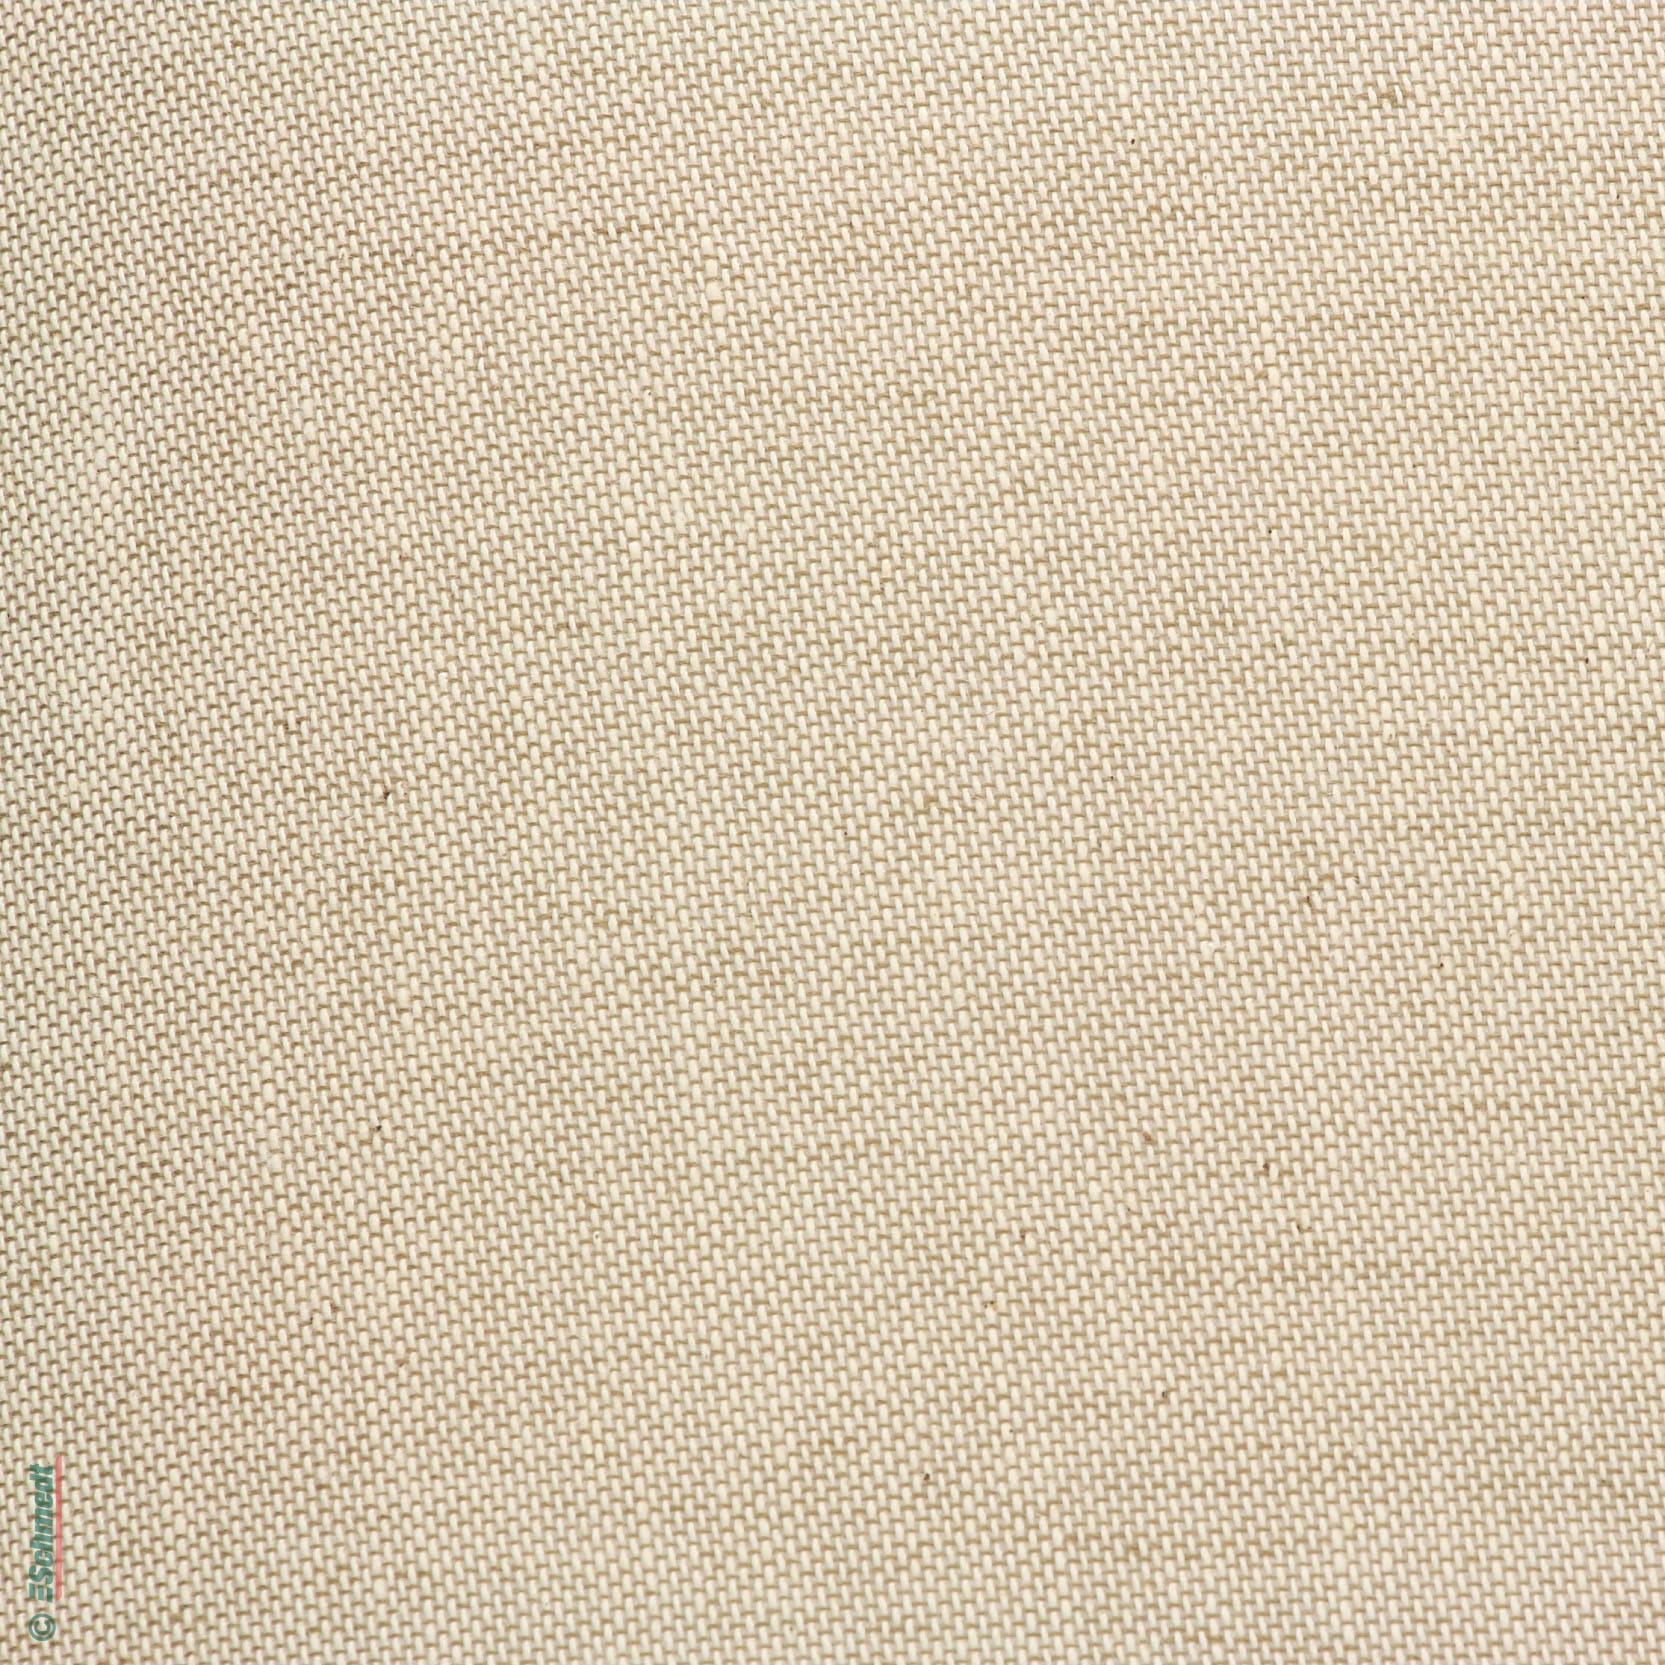 Superior Bookcloth Linen 17x21